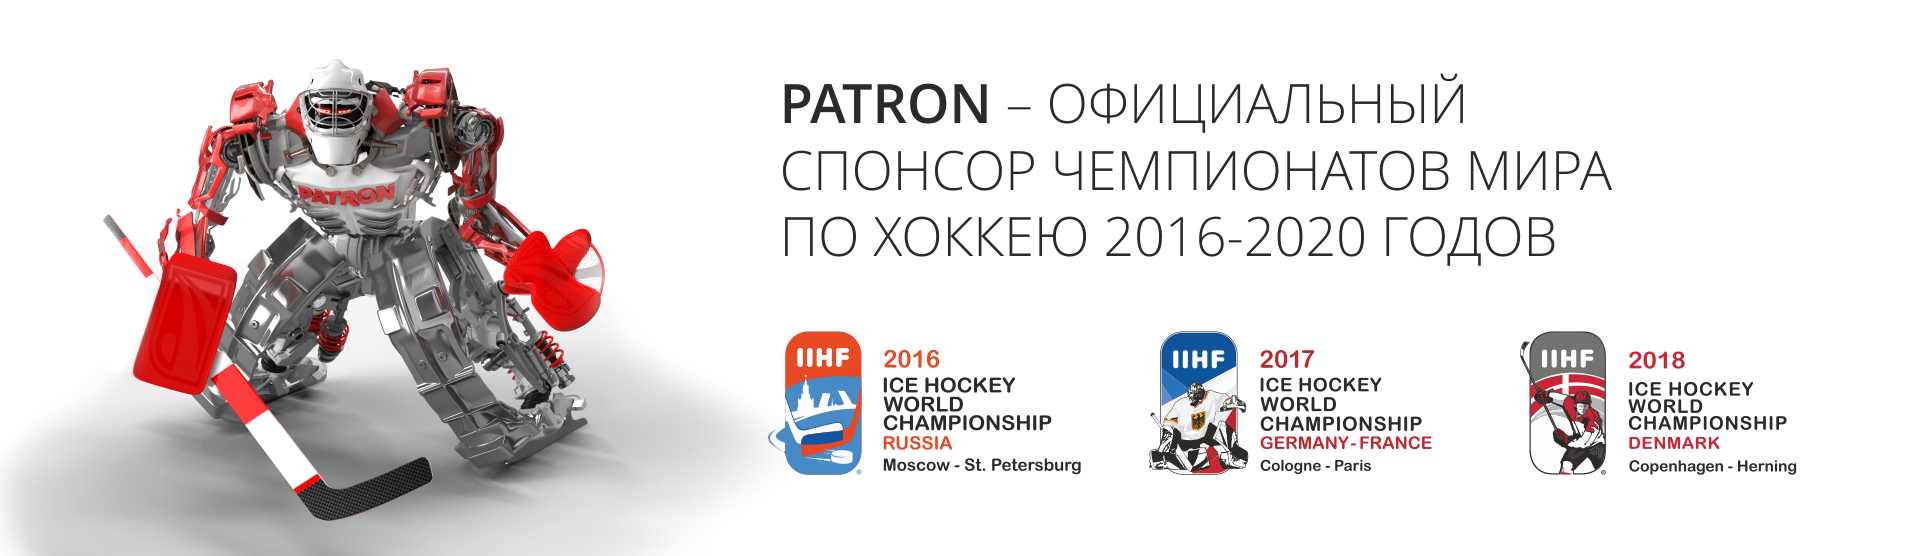 PATRON стал официальным спонсором Чемпионата Мира по хоккею